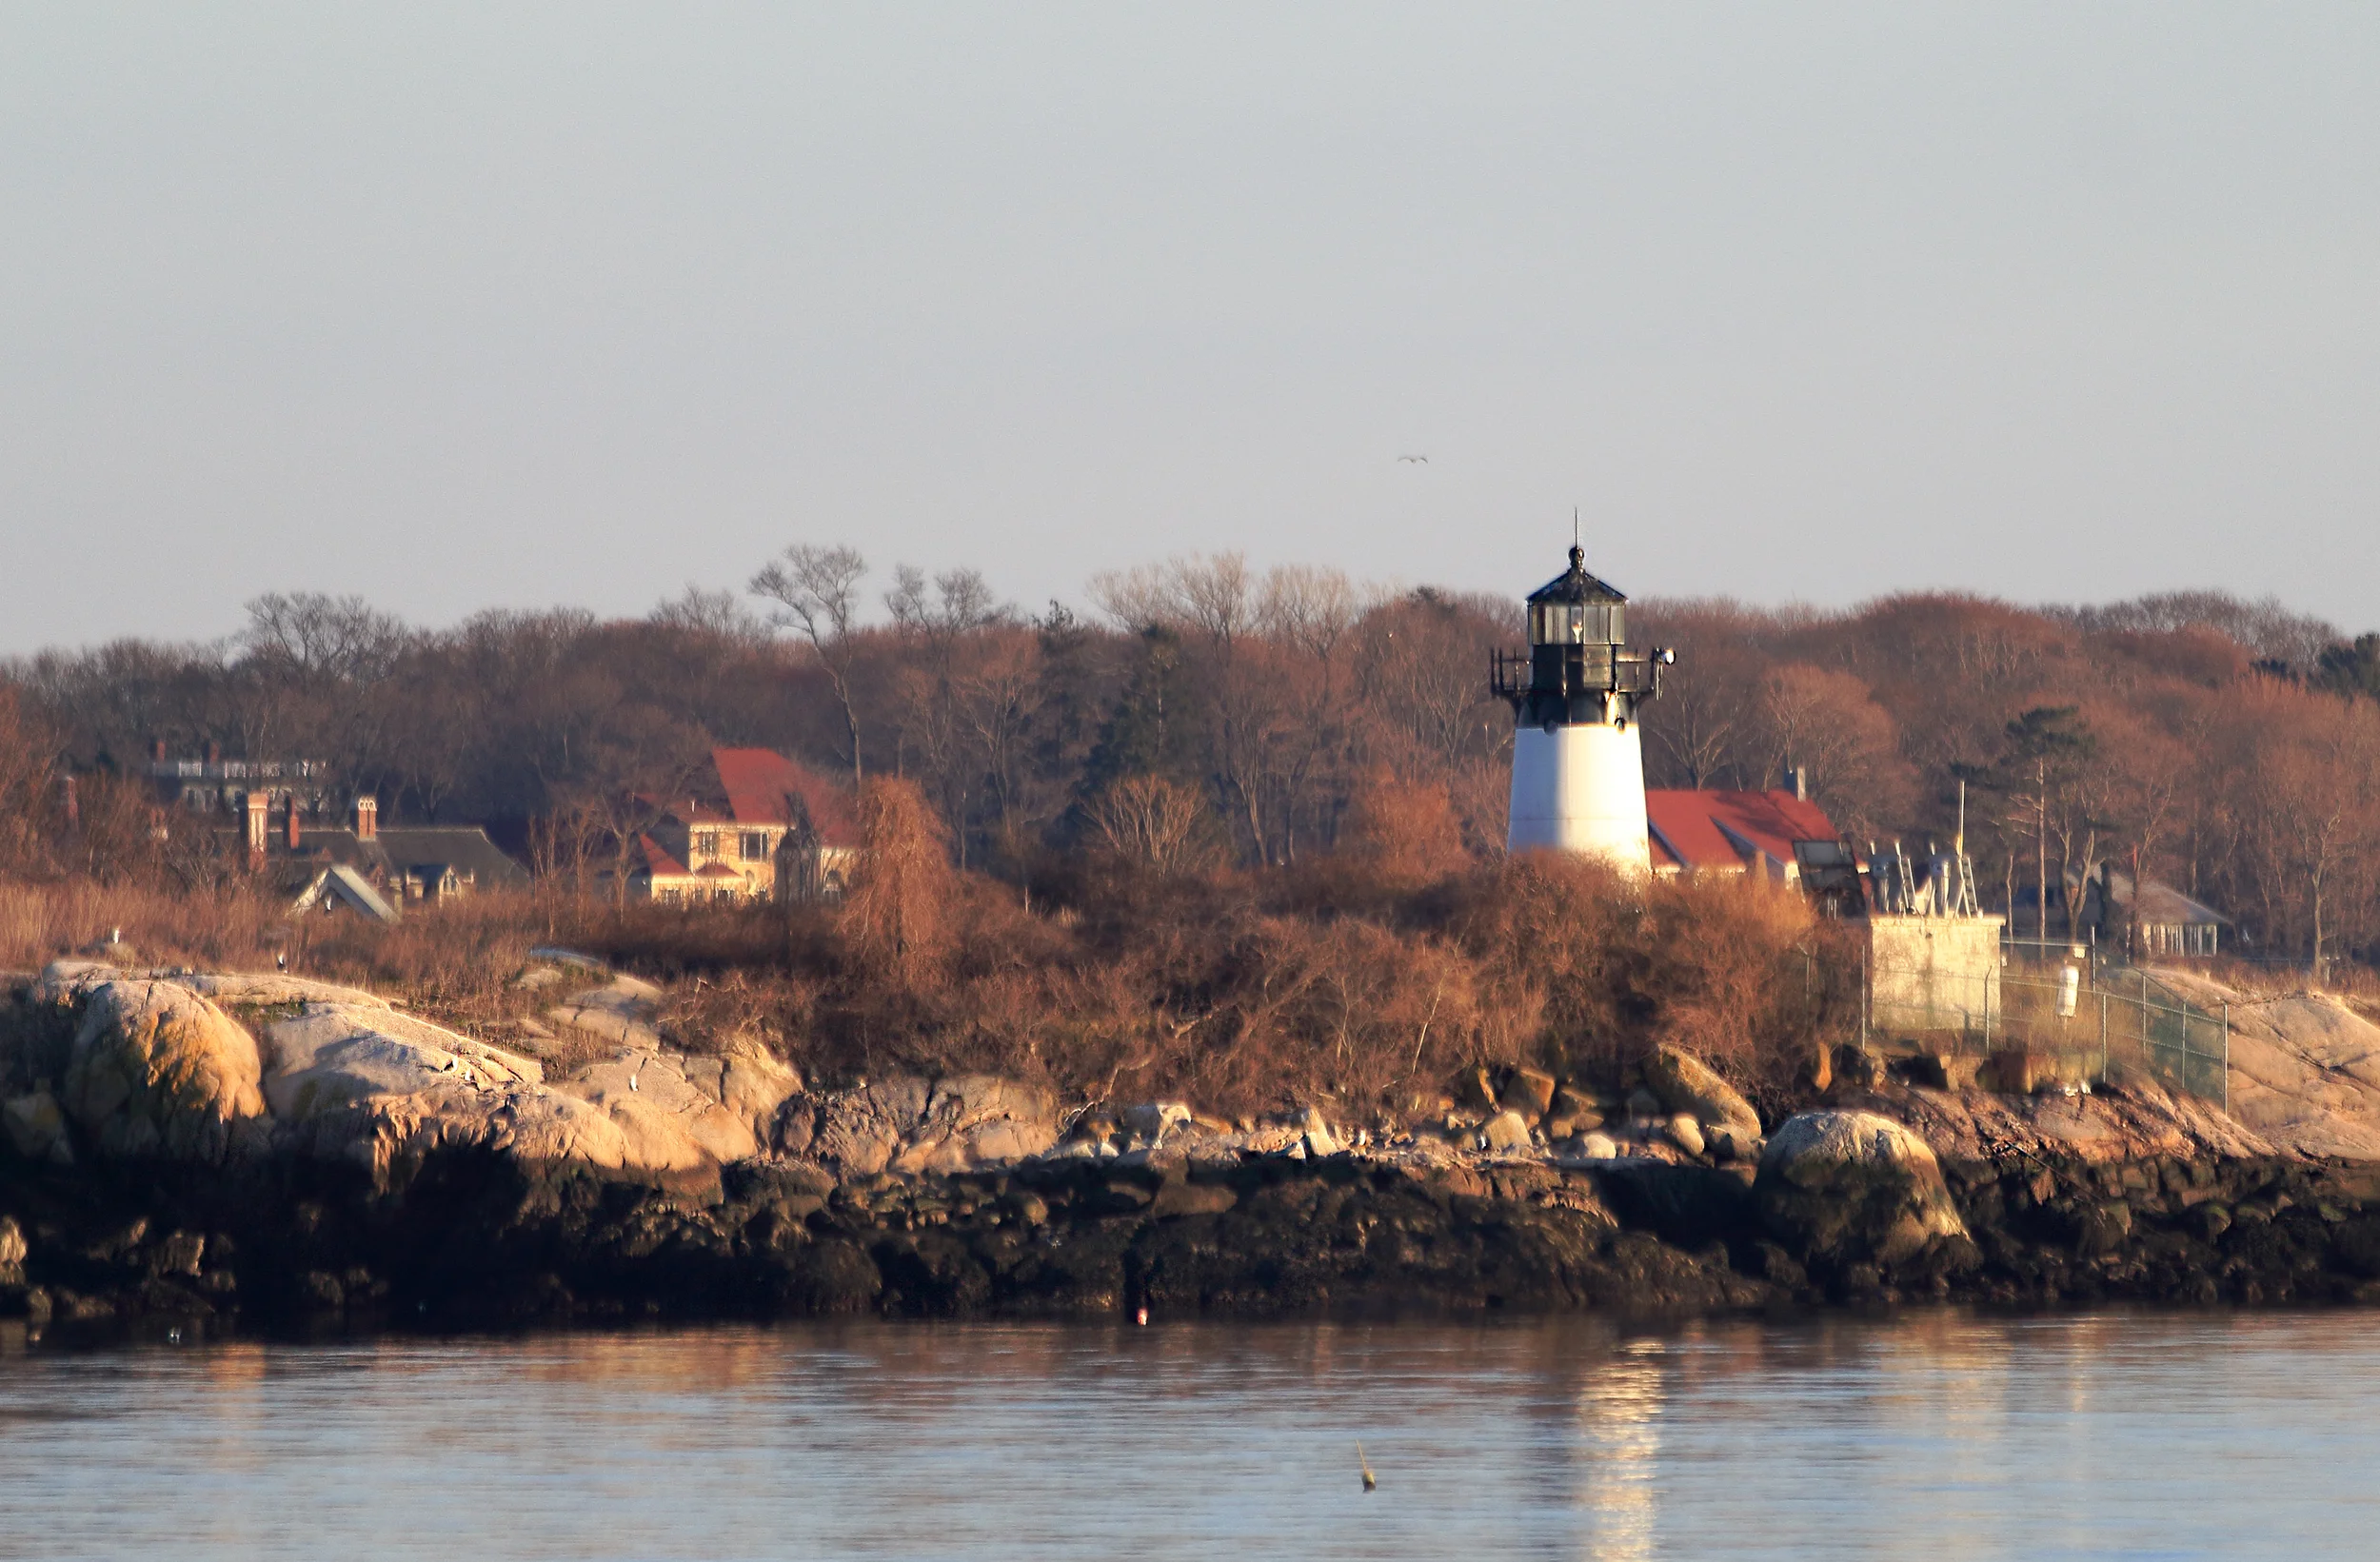 Ten Pound Island Lighthouse